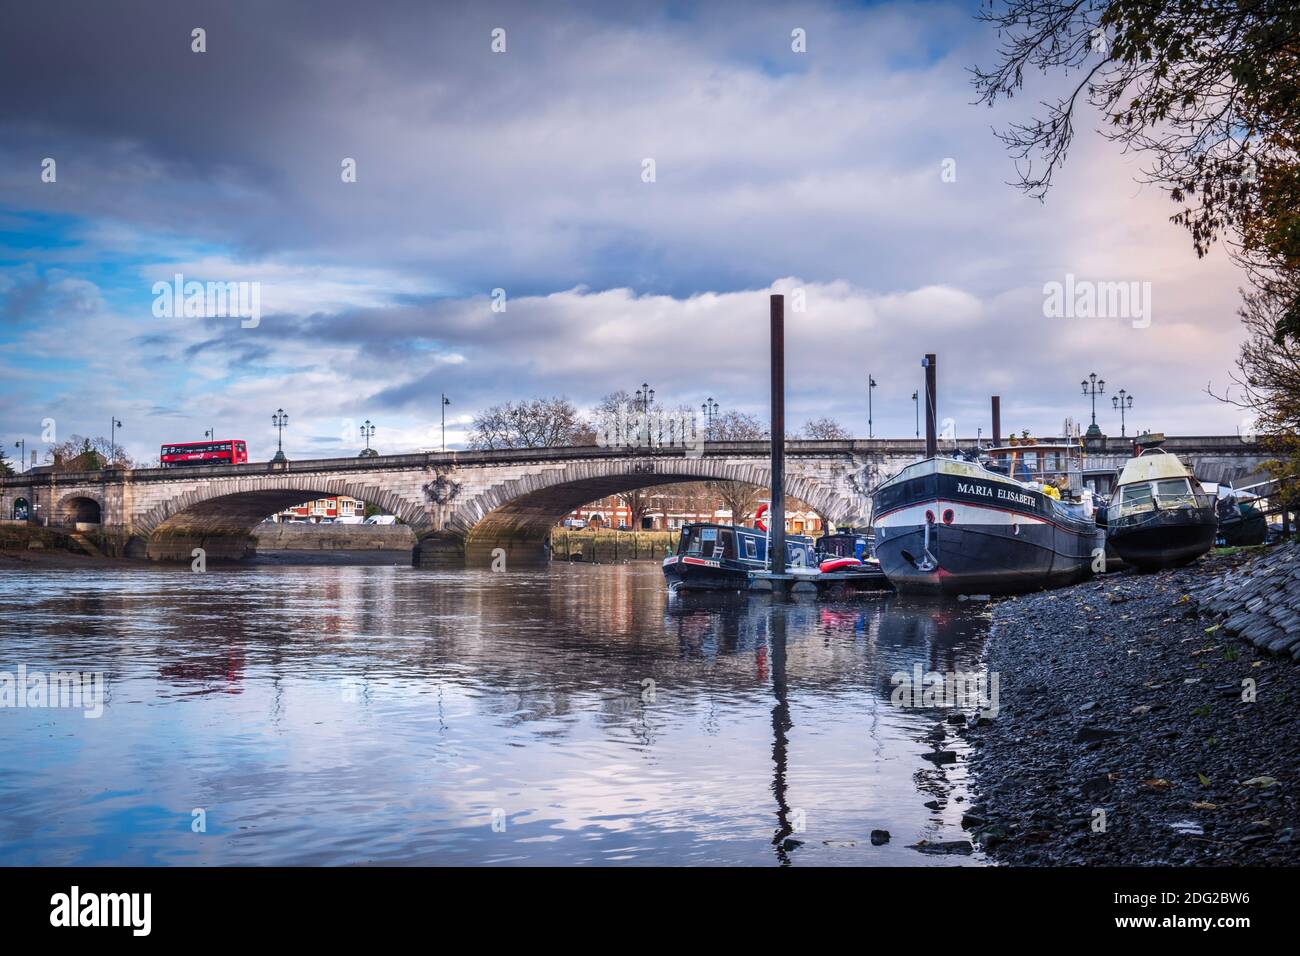 Royaume-Uni, Londres, Richmond-upon-Thames / Hounslow, Kew Bridge, un pont classé Grade II au-dessus de la Tamise, Thames à marée basse, amarré des bateaux Banque D'Images